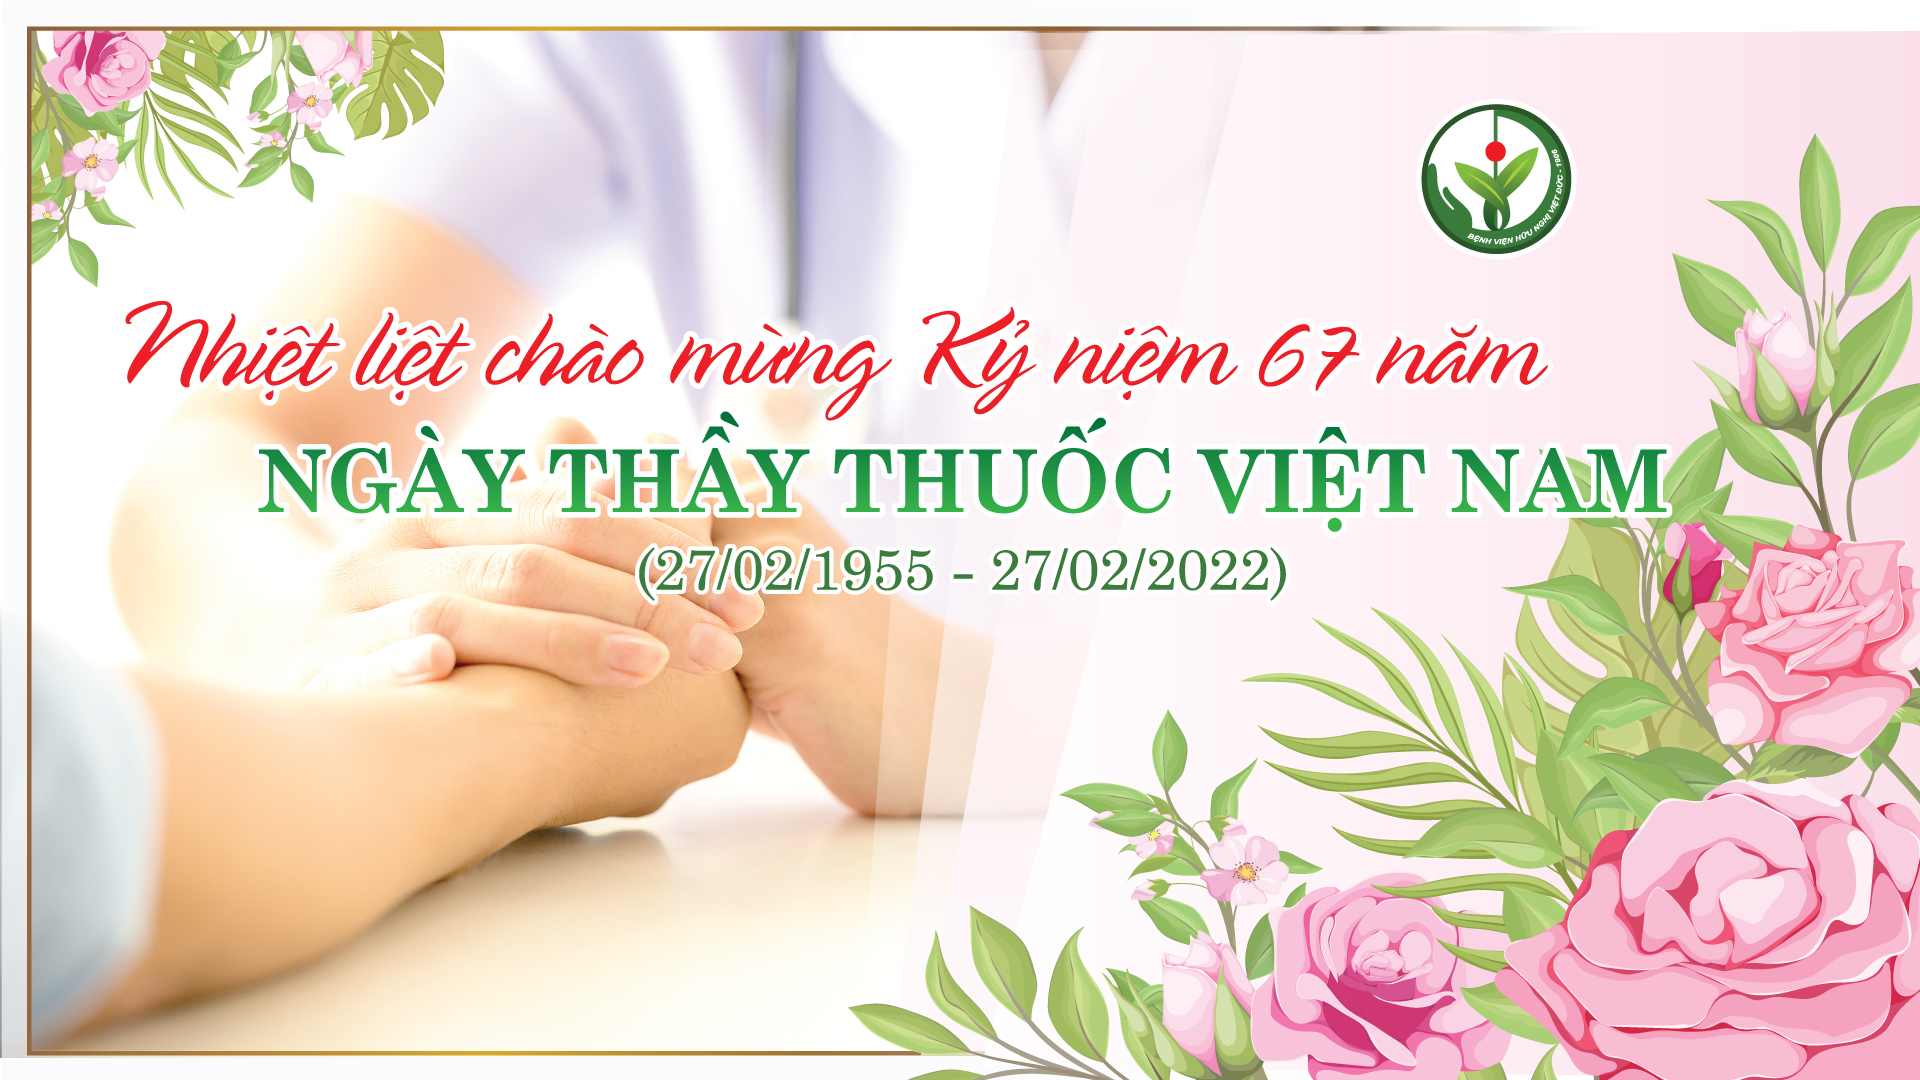 Hôm nay là kỉ niệm 67 năm ngày truyền thống ngành Y tế Việt Nam, chúng ta hãy cùng nhau ngắm nhìn những hình ảnh lịch sử, luyến tiếc những người đã có công cho ngành y tế thành công như hôm nay.